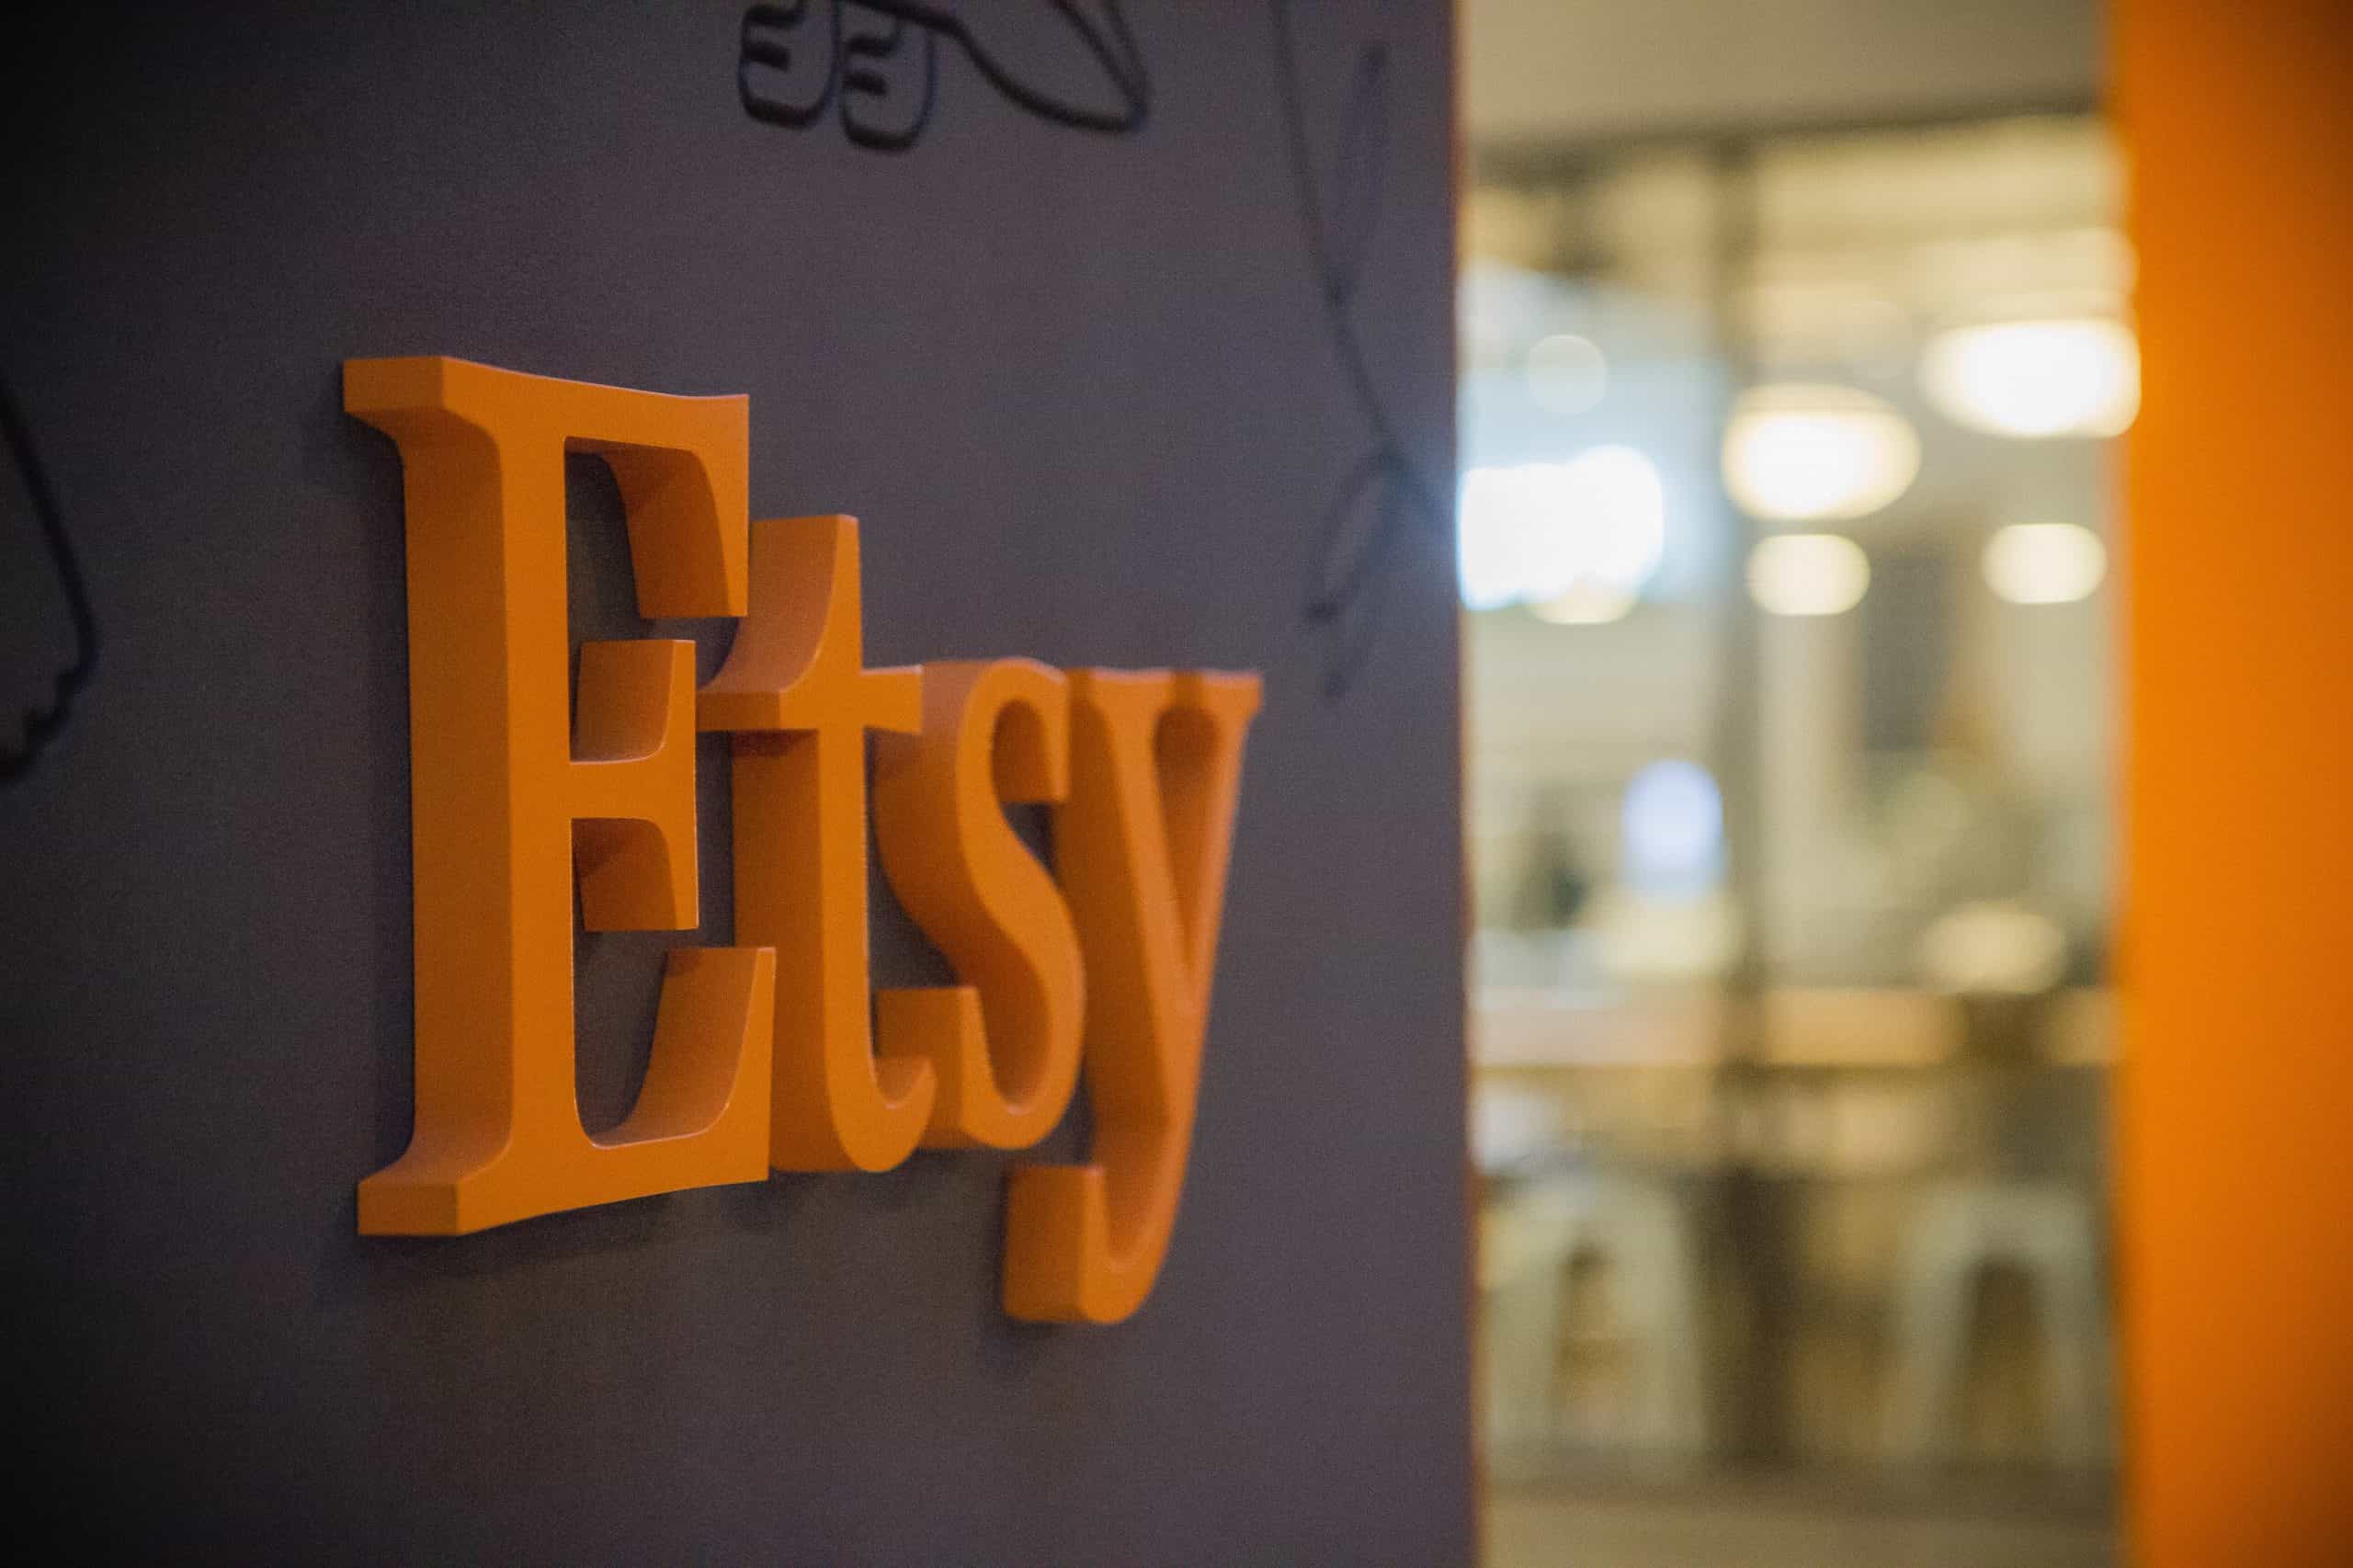 Etsy Headquarters